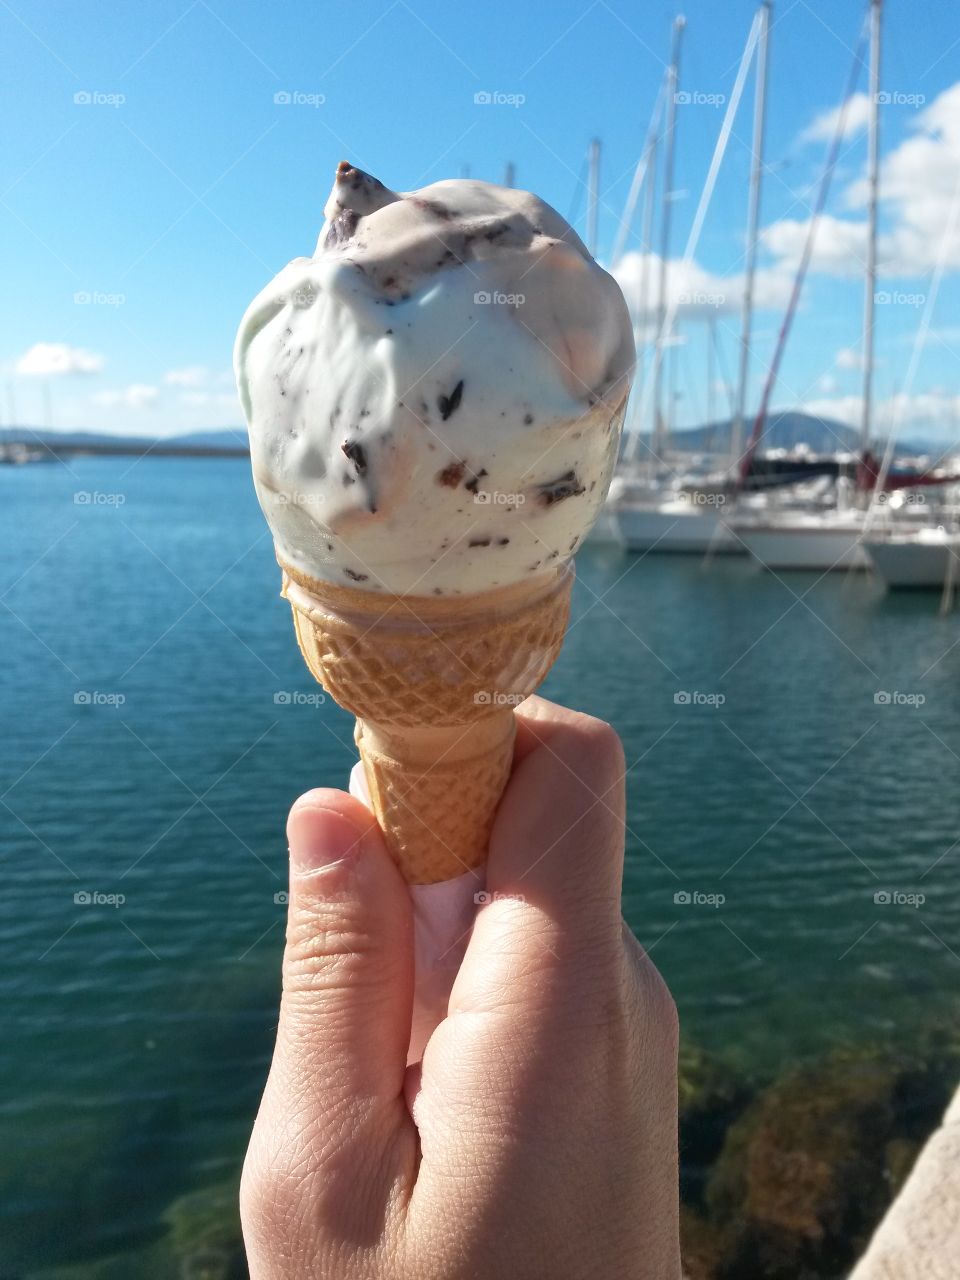 A person holding ice-cream cone